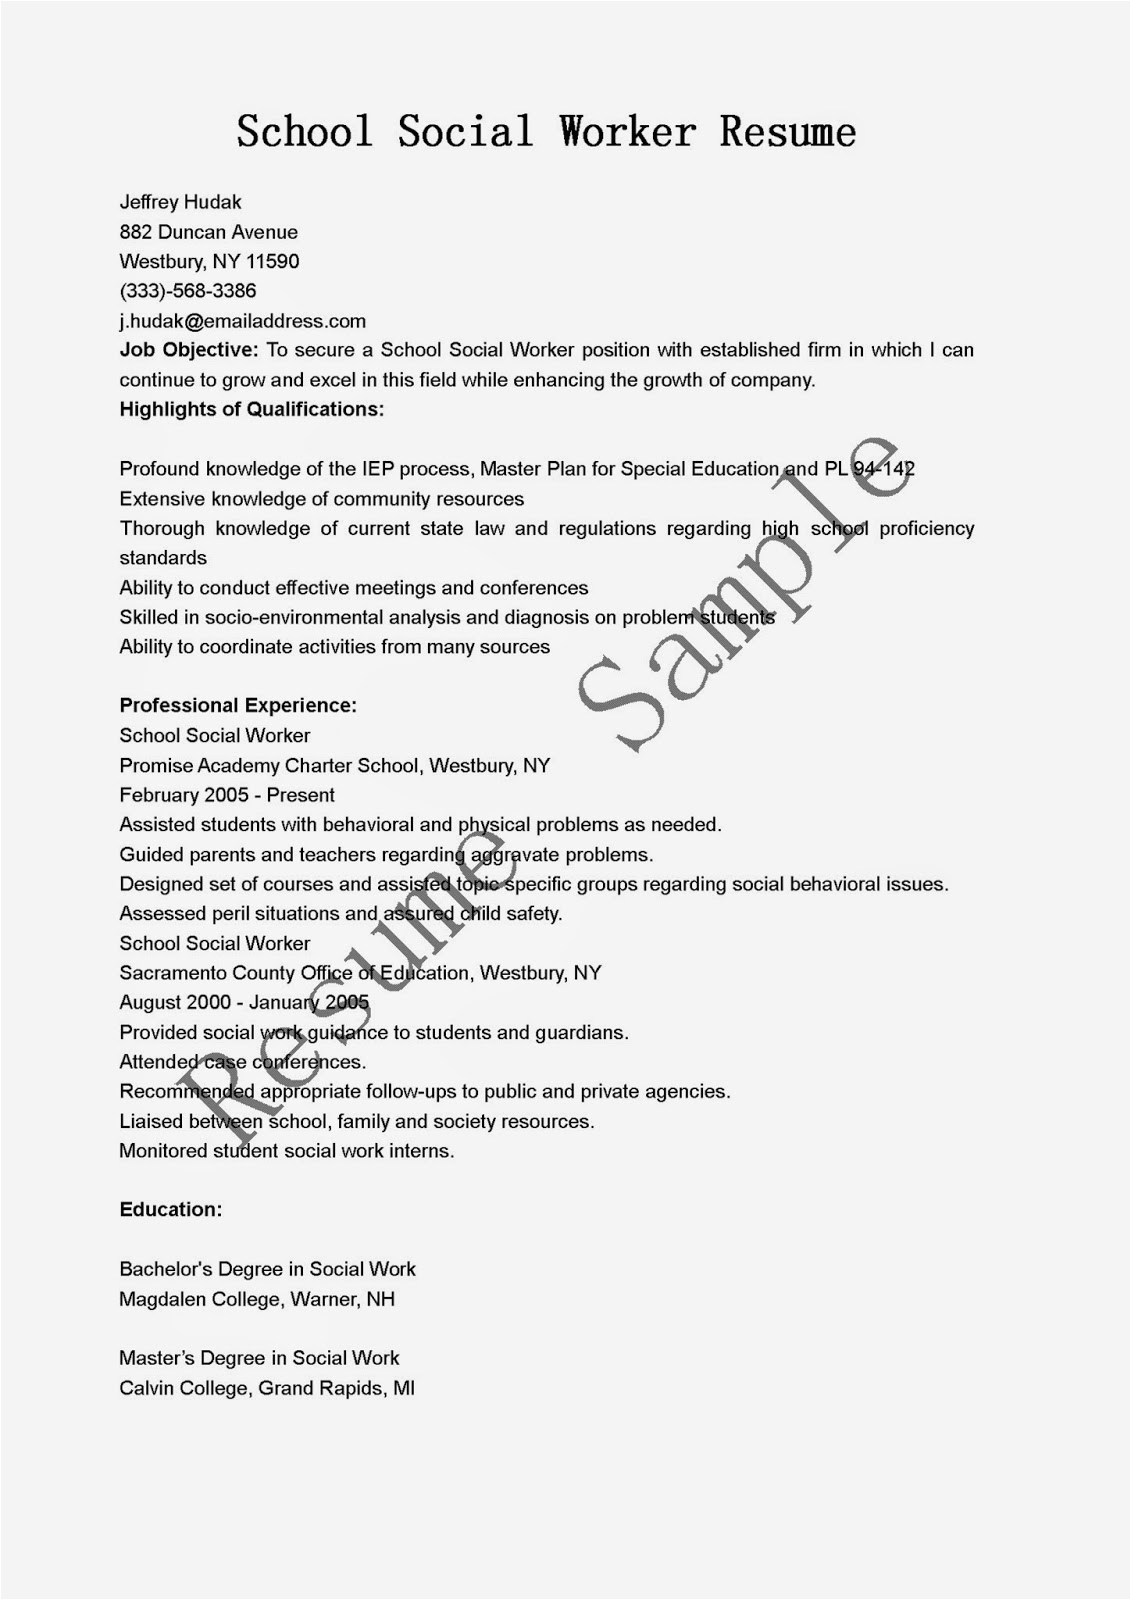 Sample Resume for social Work Student Resume Samples School social Worker Resume Sample